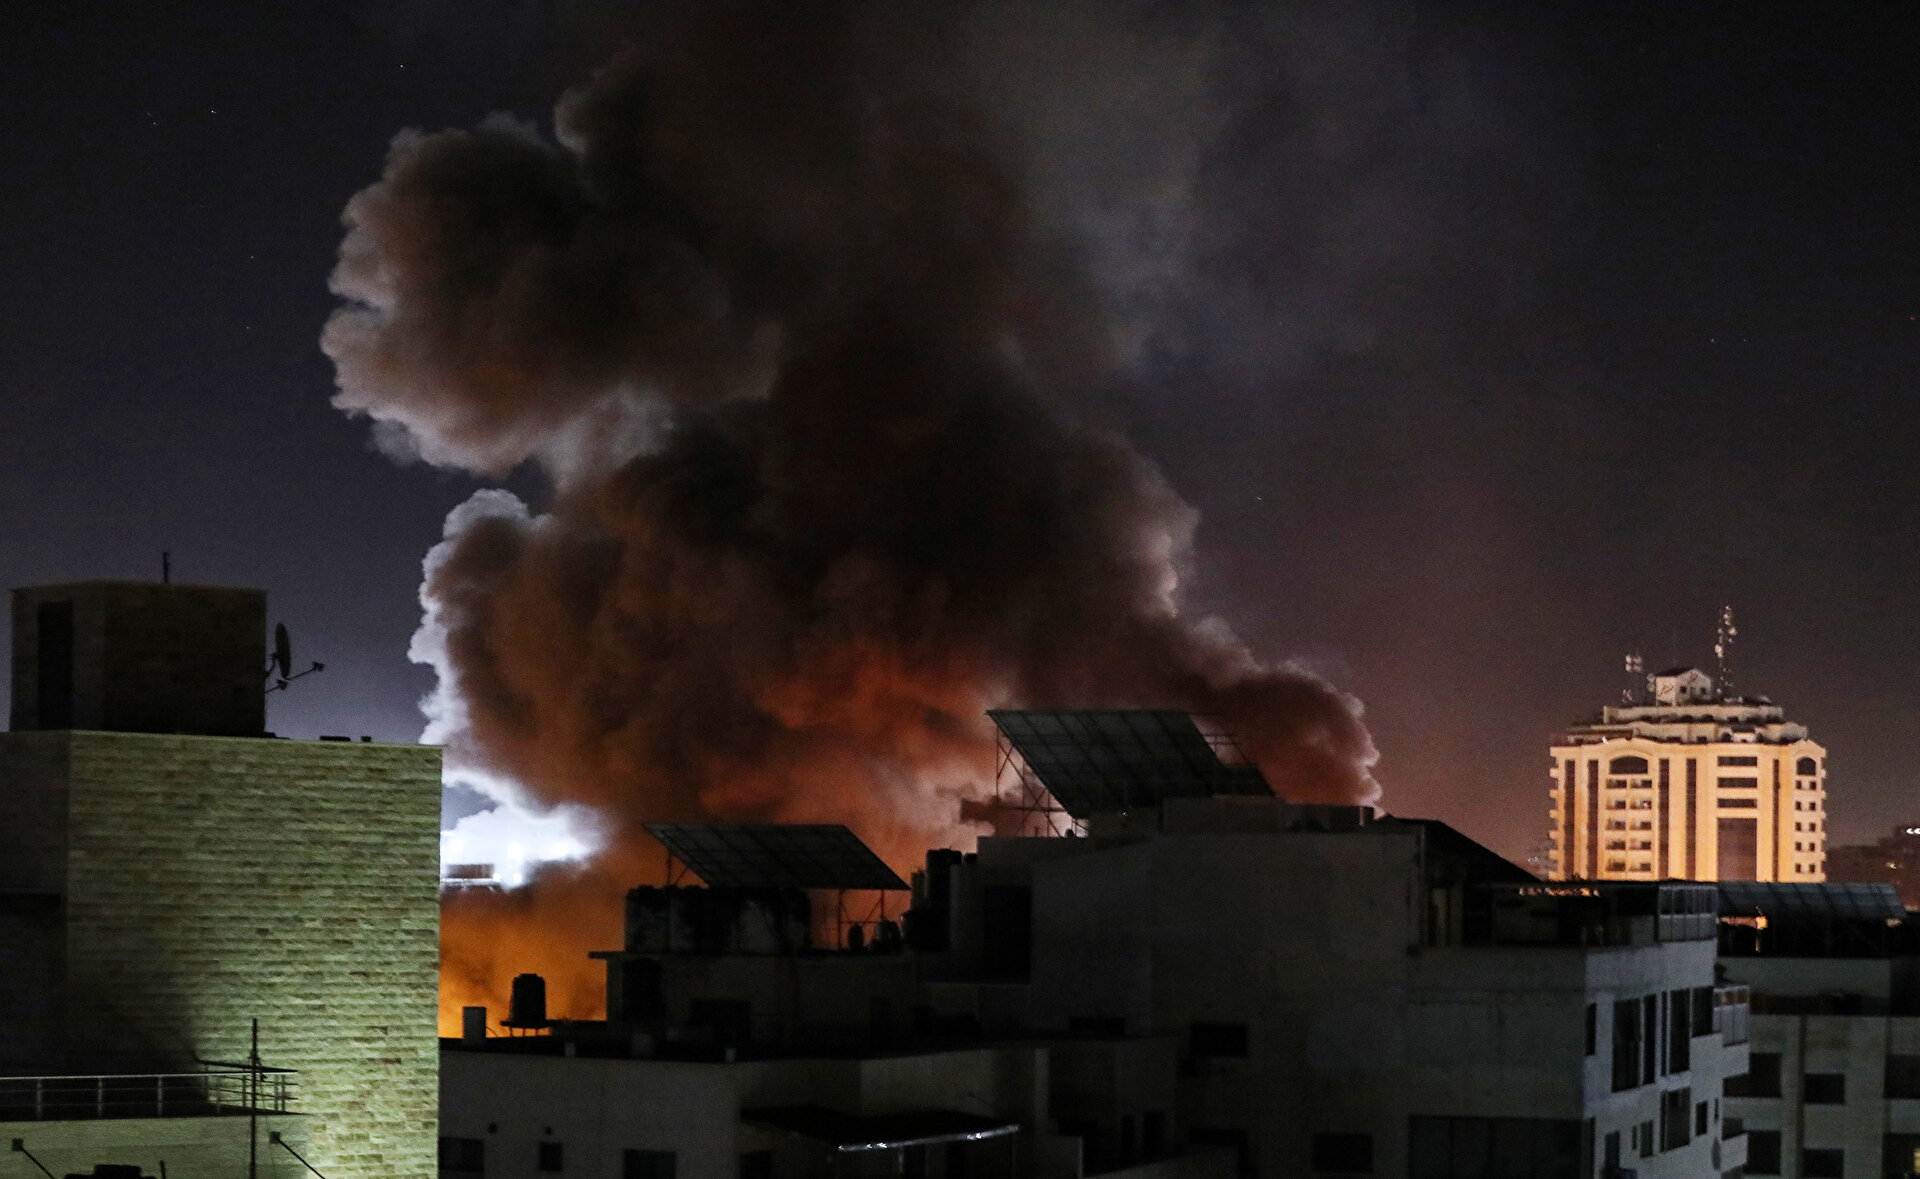 Israeli warplanes hit buildings in Gaza Strip